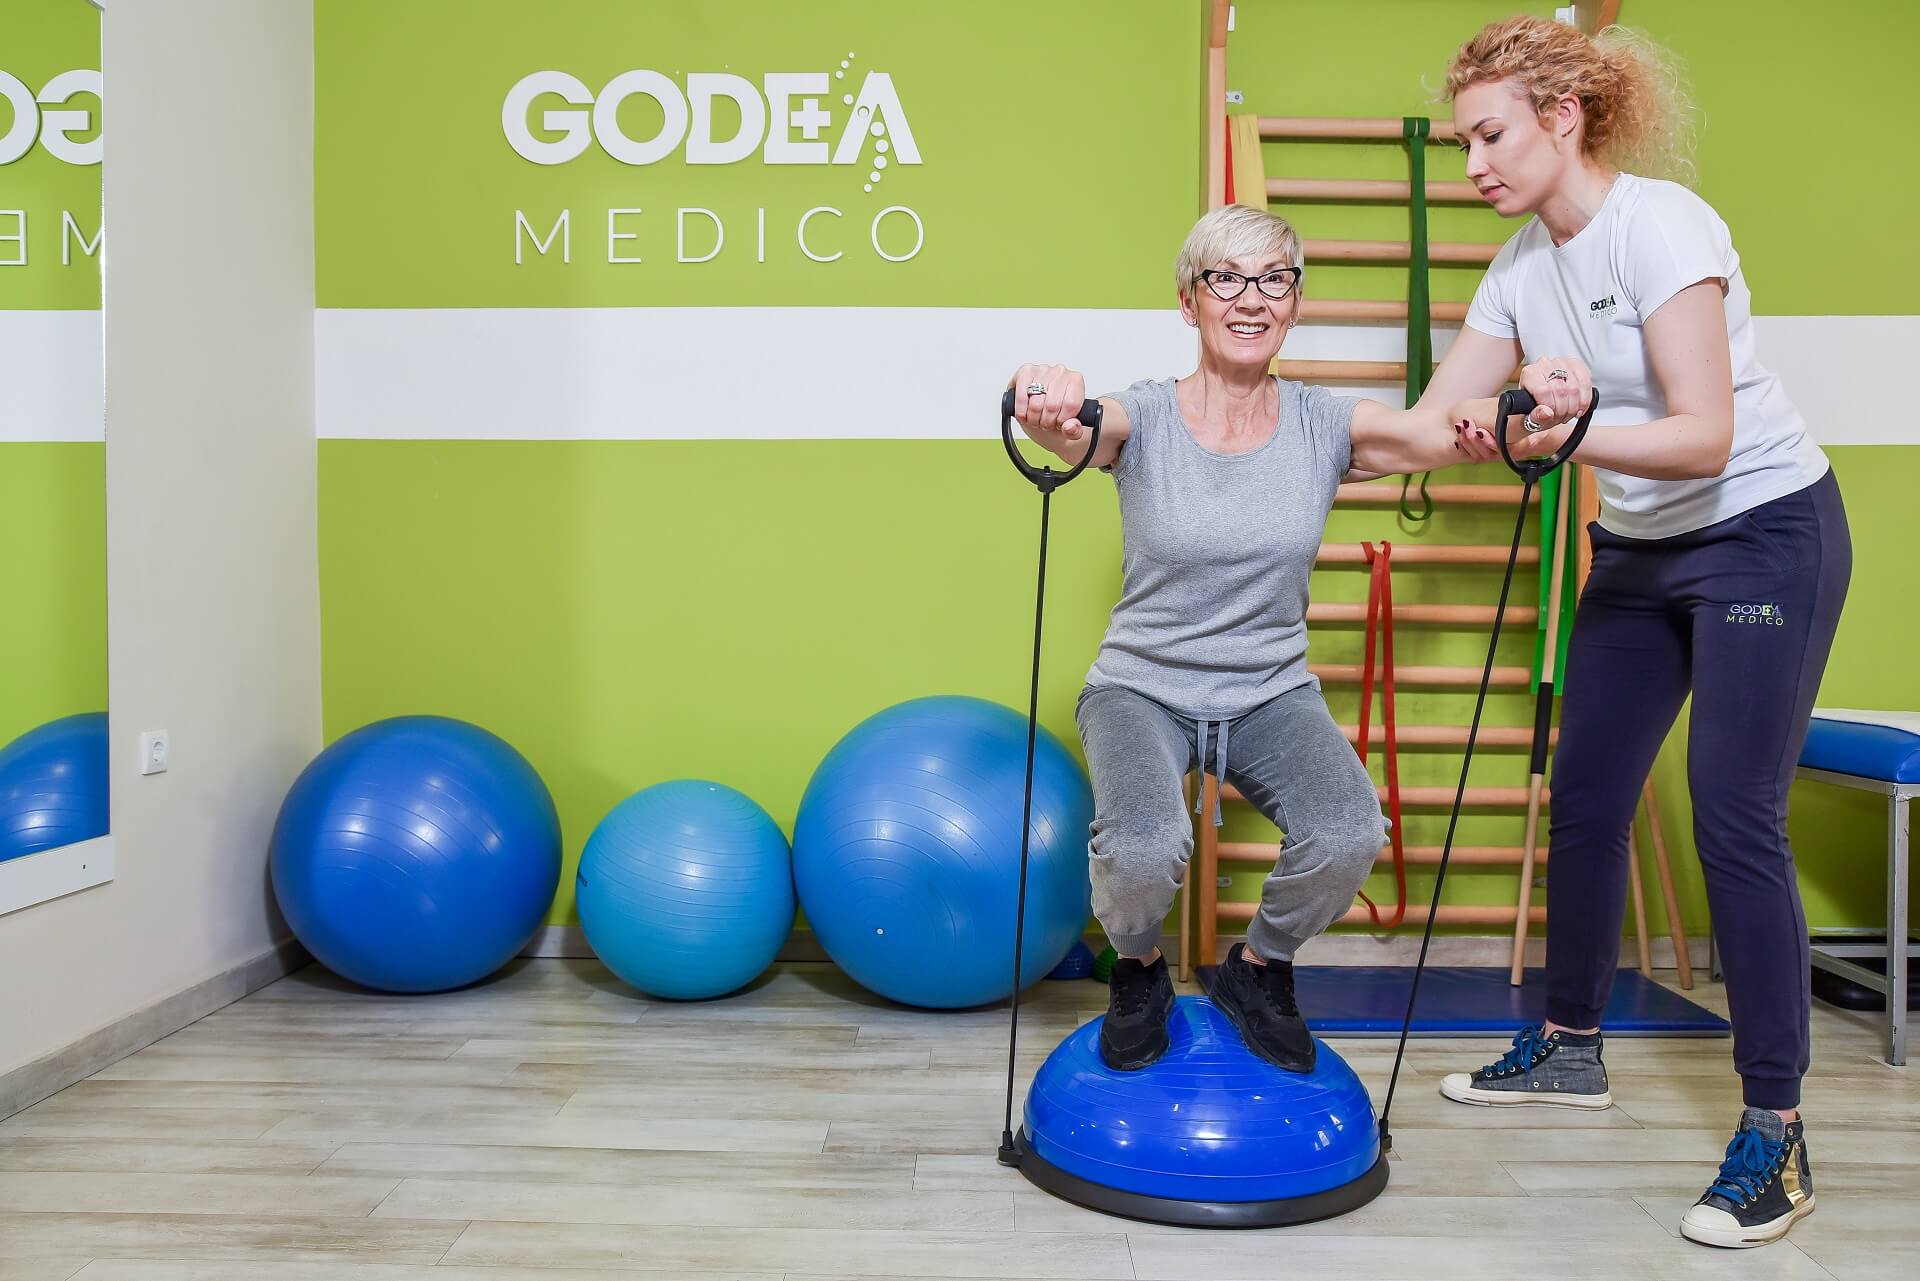 Pacijentkinja izvodi vežbe kineziterapije uz pomoć terapeutkinje Godea Medico